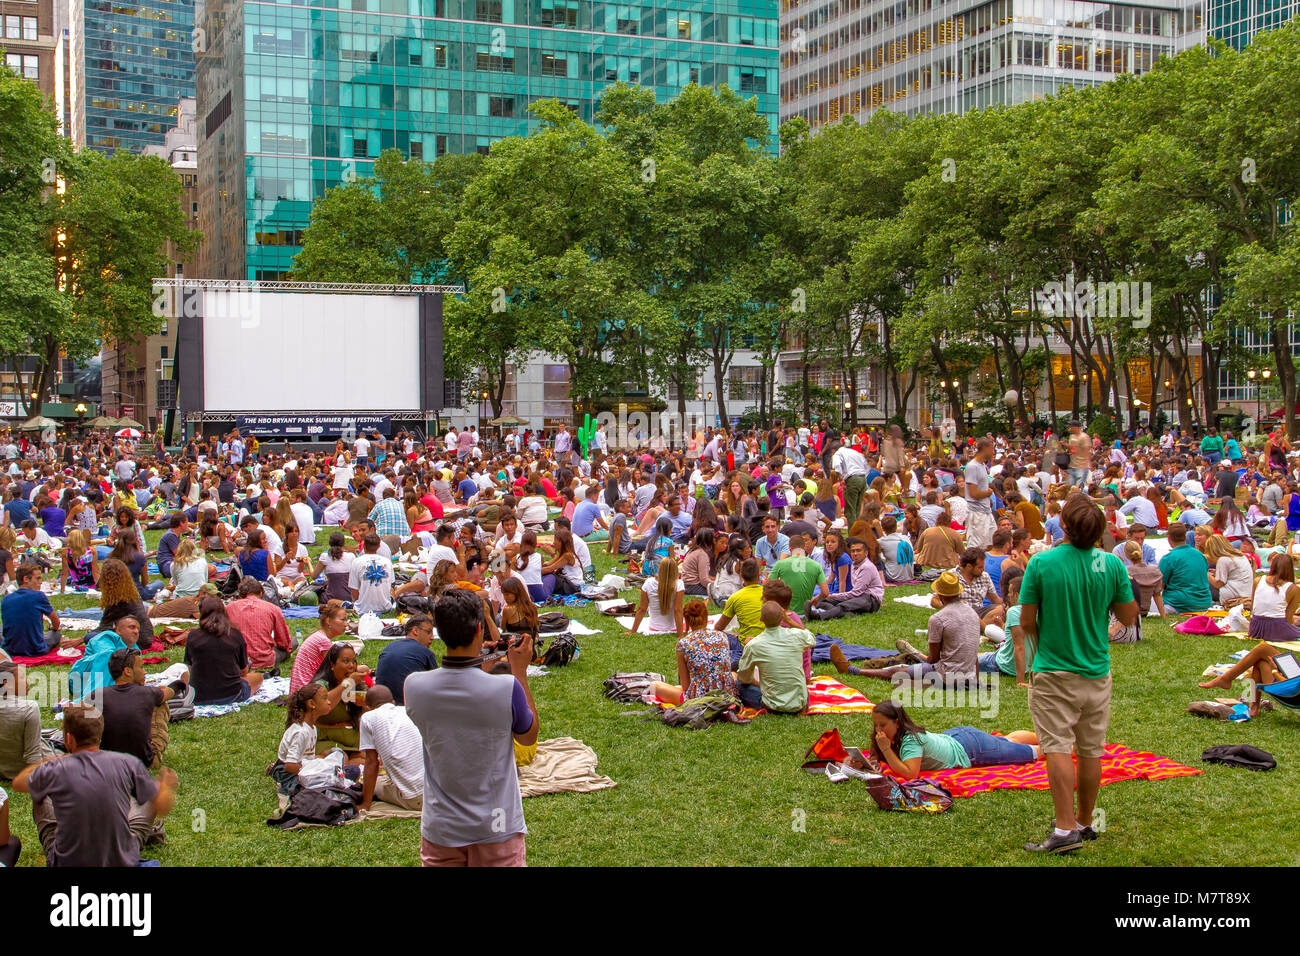 Auf dem Rasen des Bryant Park, Manhattan, versammelten sich Menschenmassen zum Bryant Park Film Festival im Freien, einer Filmvorführung im Freien in New York City Stockfoto